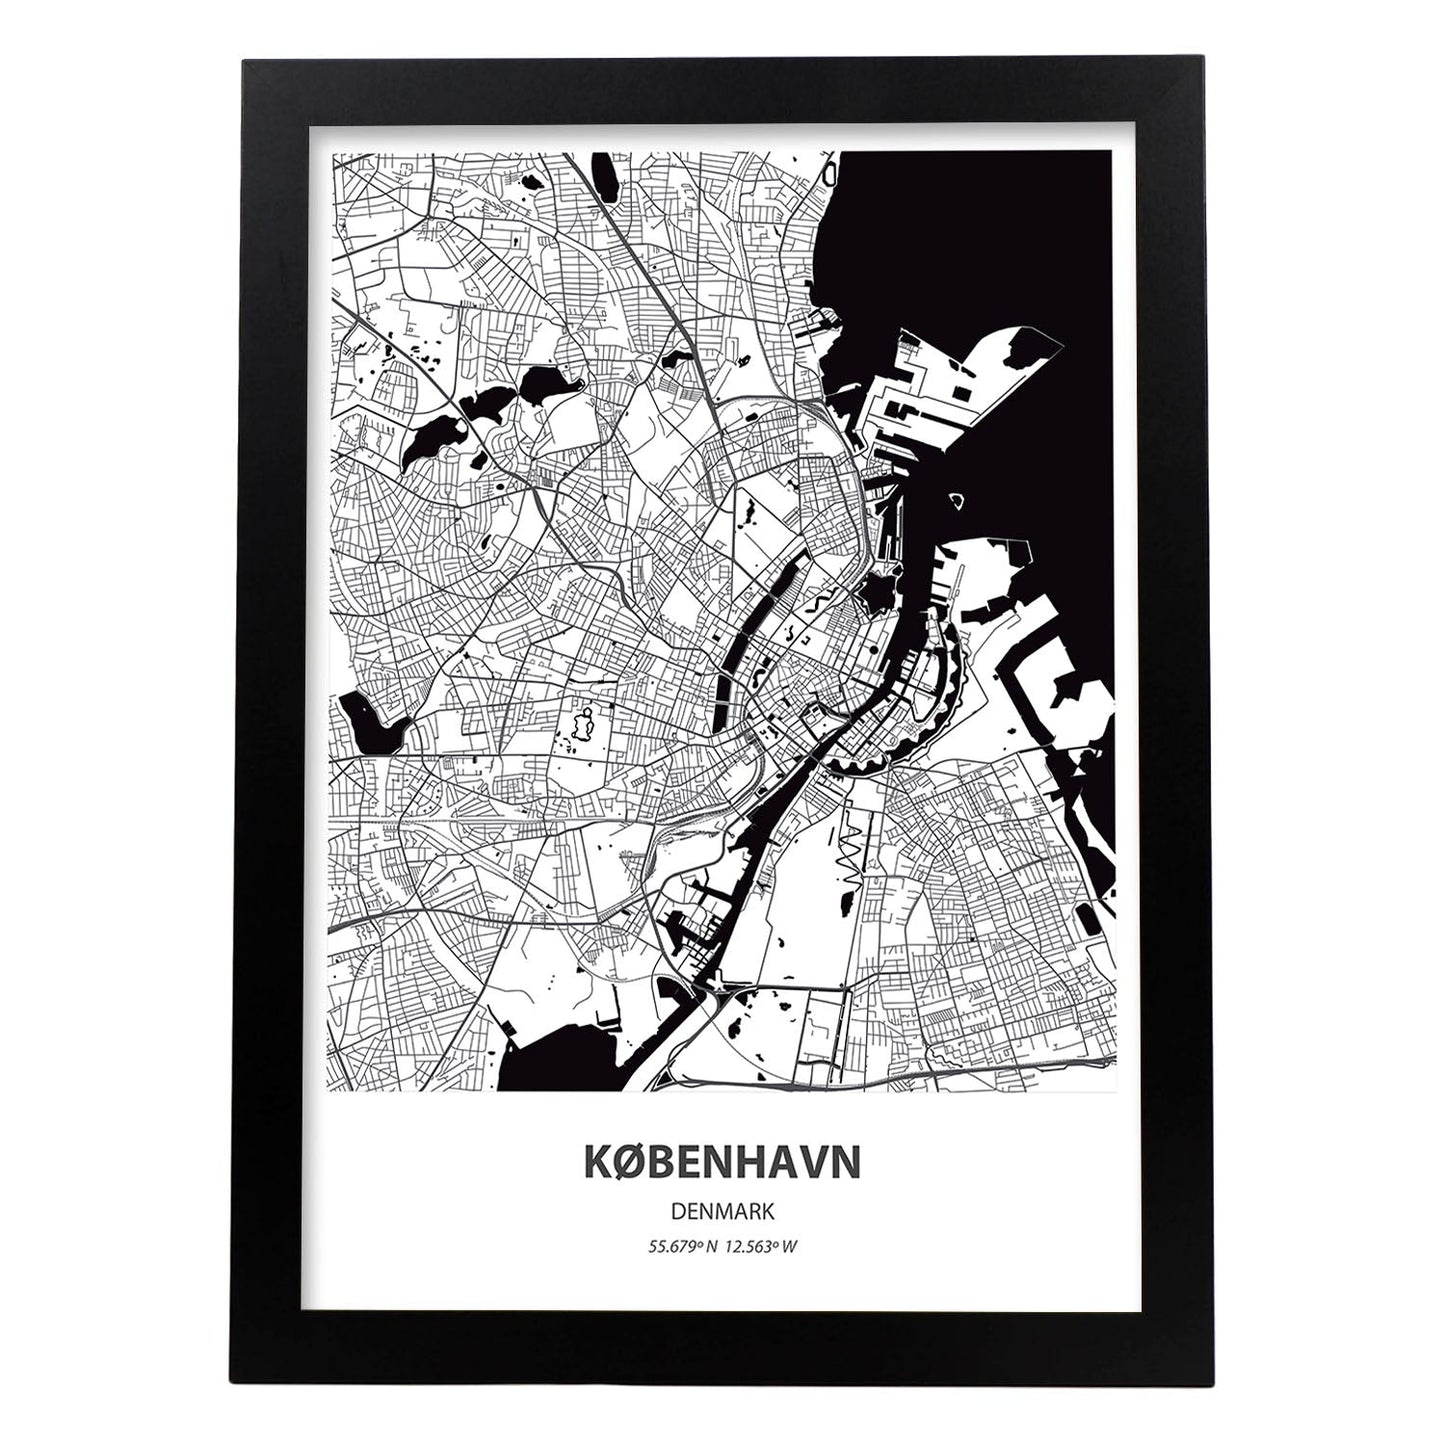 Poster con mapa de Kobenhavn - Dinamarca. Láminas de ciudades de Europa con mares y ríos en color negro.-Artwork-Nacnic-A3-Marco Negro-Nacnic Estudio SL